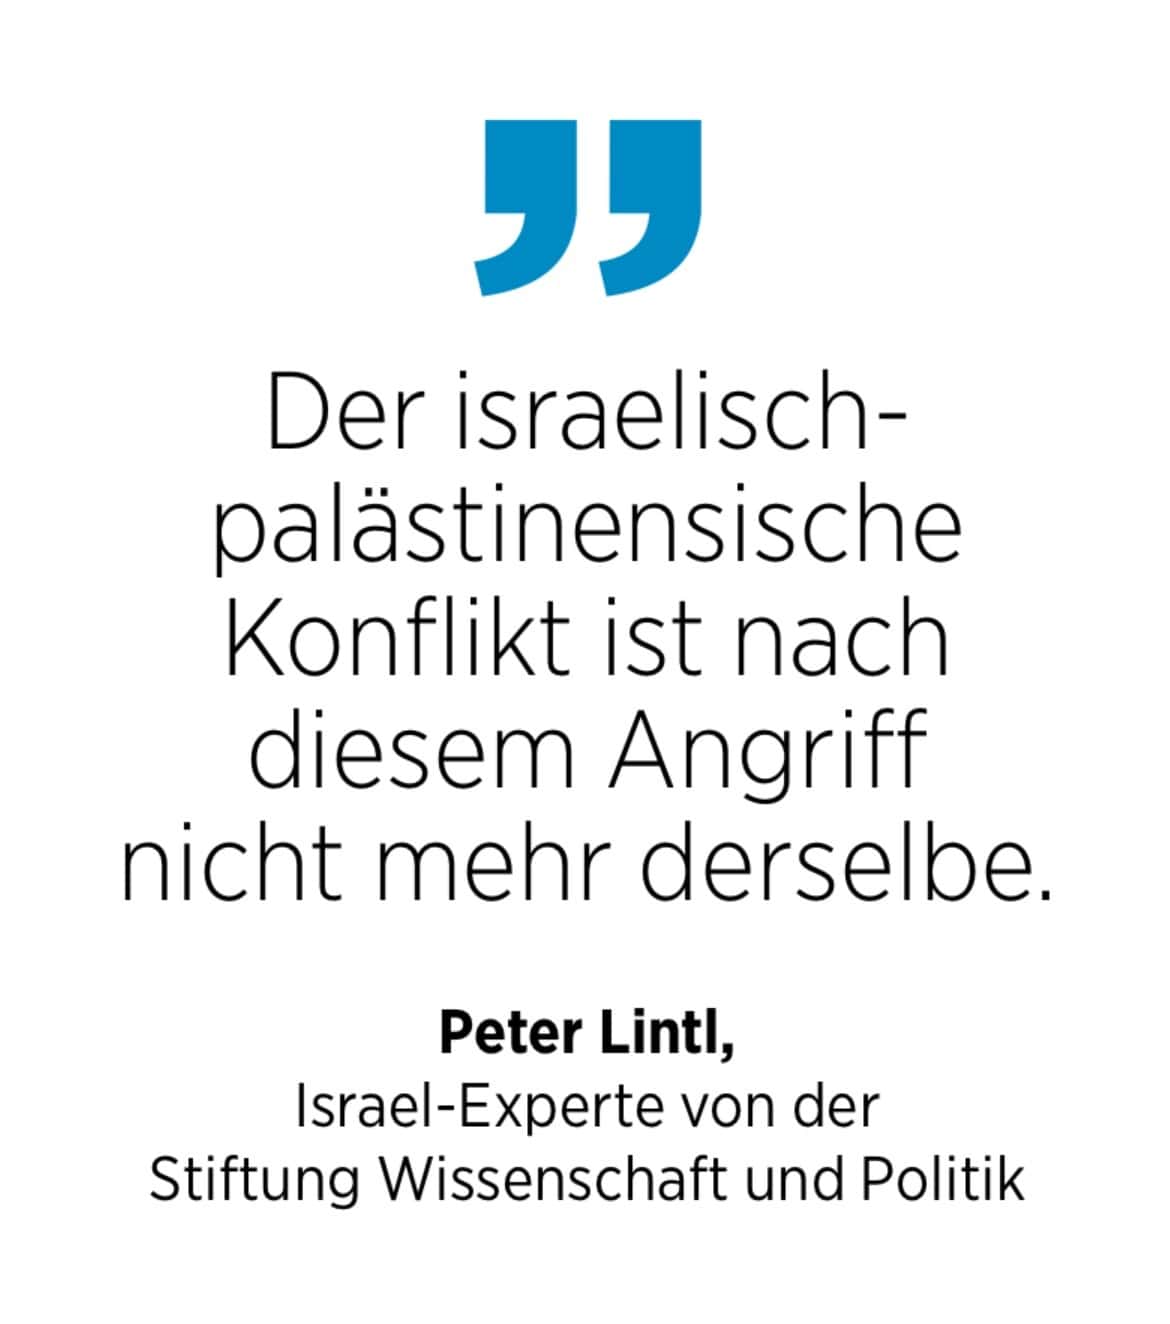 Israel-Experte Peter Lintl von der Stiftung Wissenschaft und Politik: Der israelisch-palästinensische
Konflikt ist nach diesem Angriff nicht mehr derselbe.